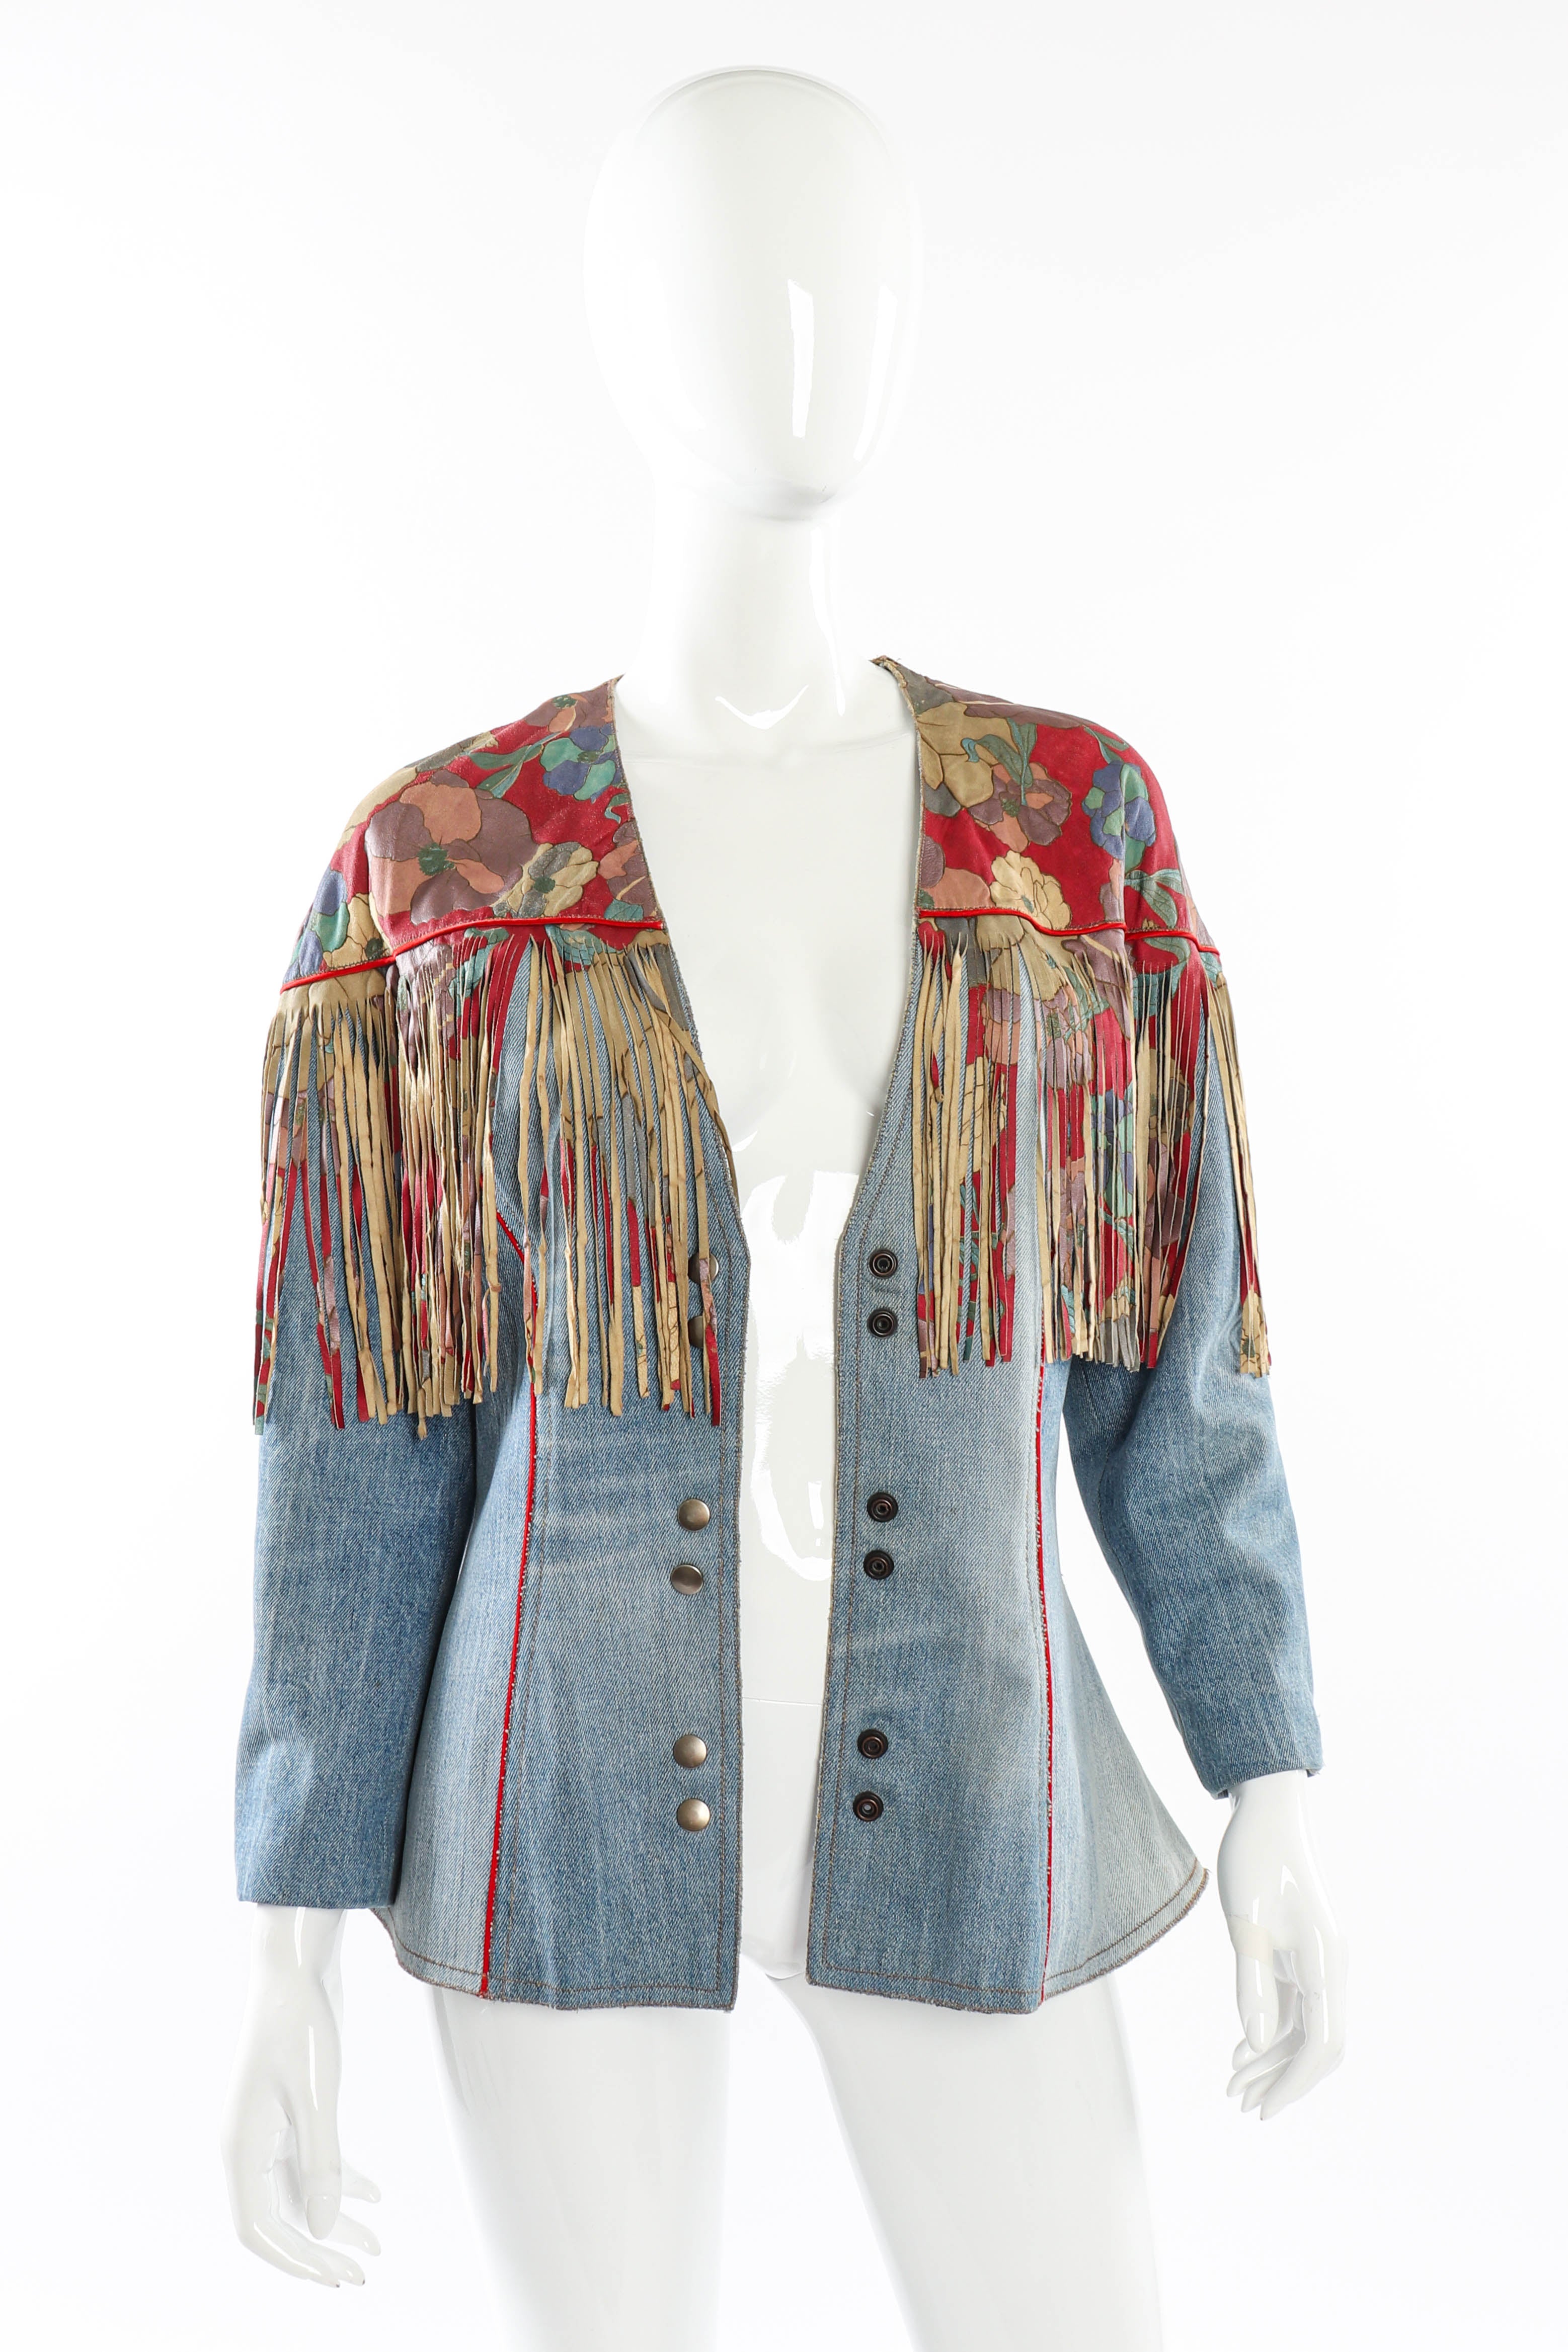 Vintage Roberto Cavalli Floral Denim and Leather Fringe Jacket open front on mannequin @recessla